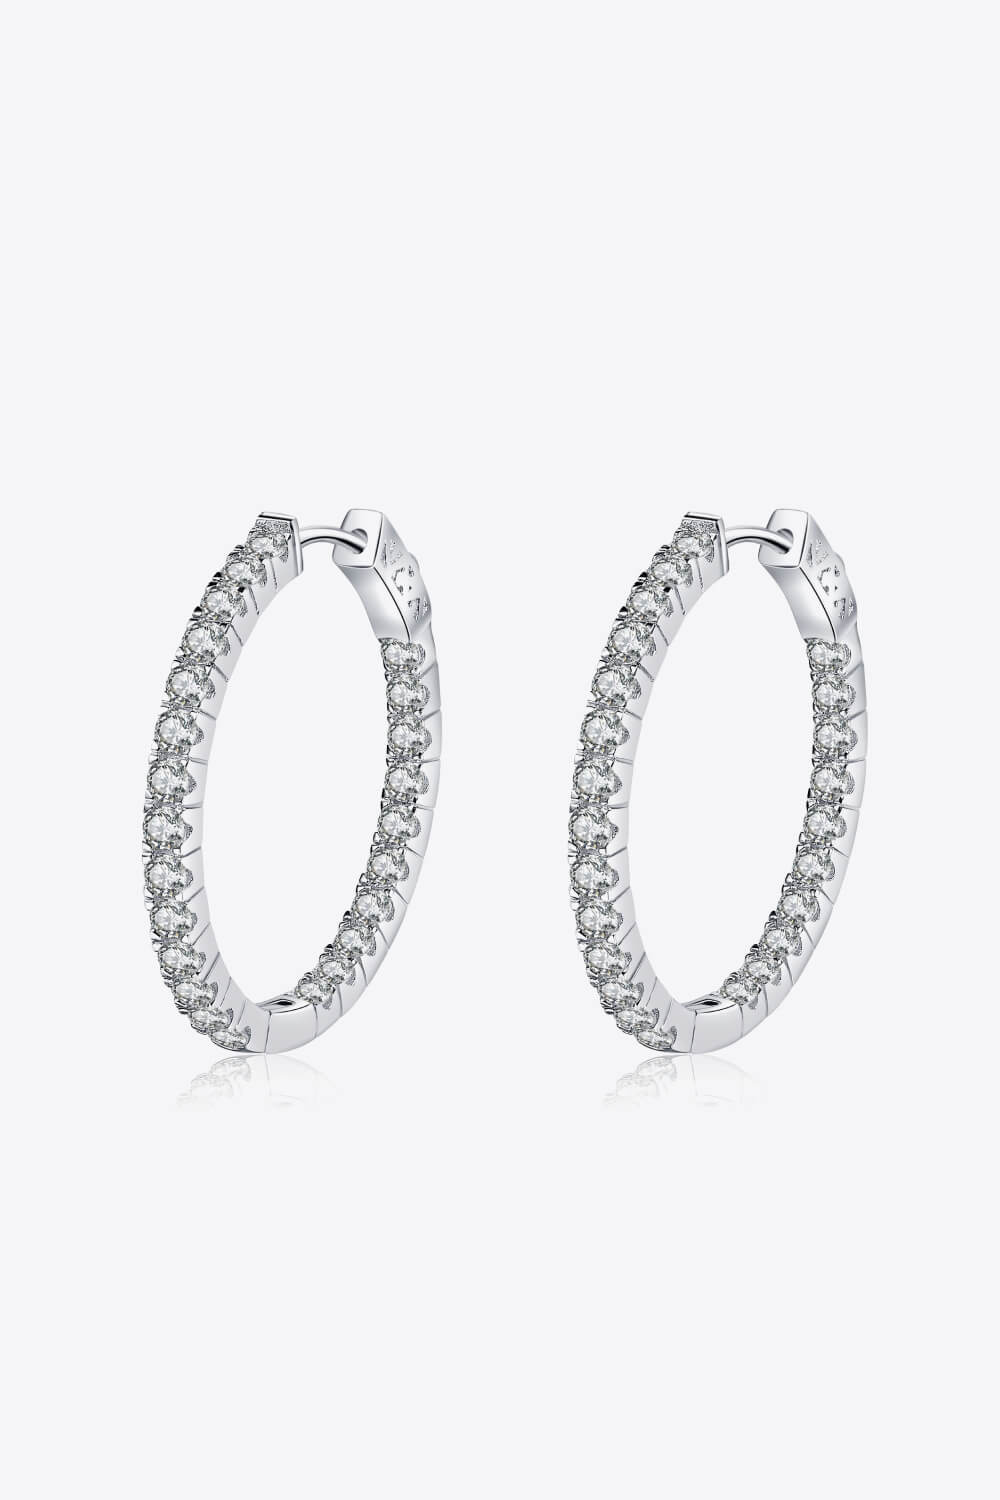 Hoop Earrings Moissanite Rhodium-Plated 925 Sterling Silver Women's Fine Jewelry